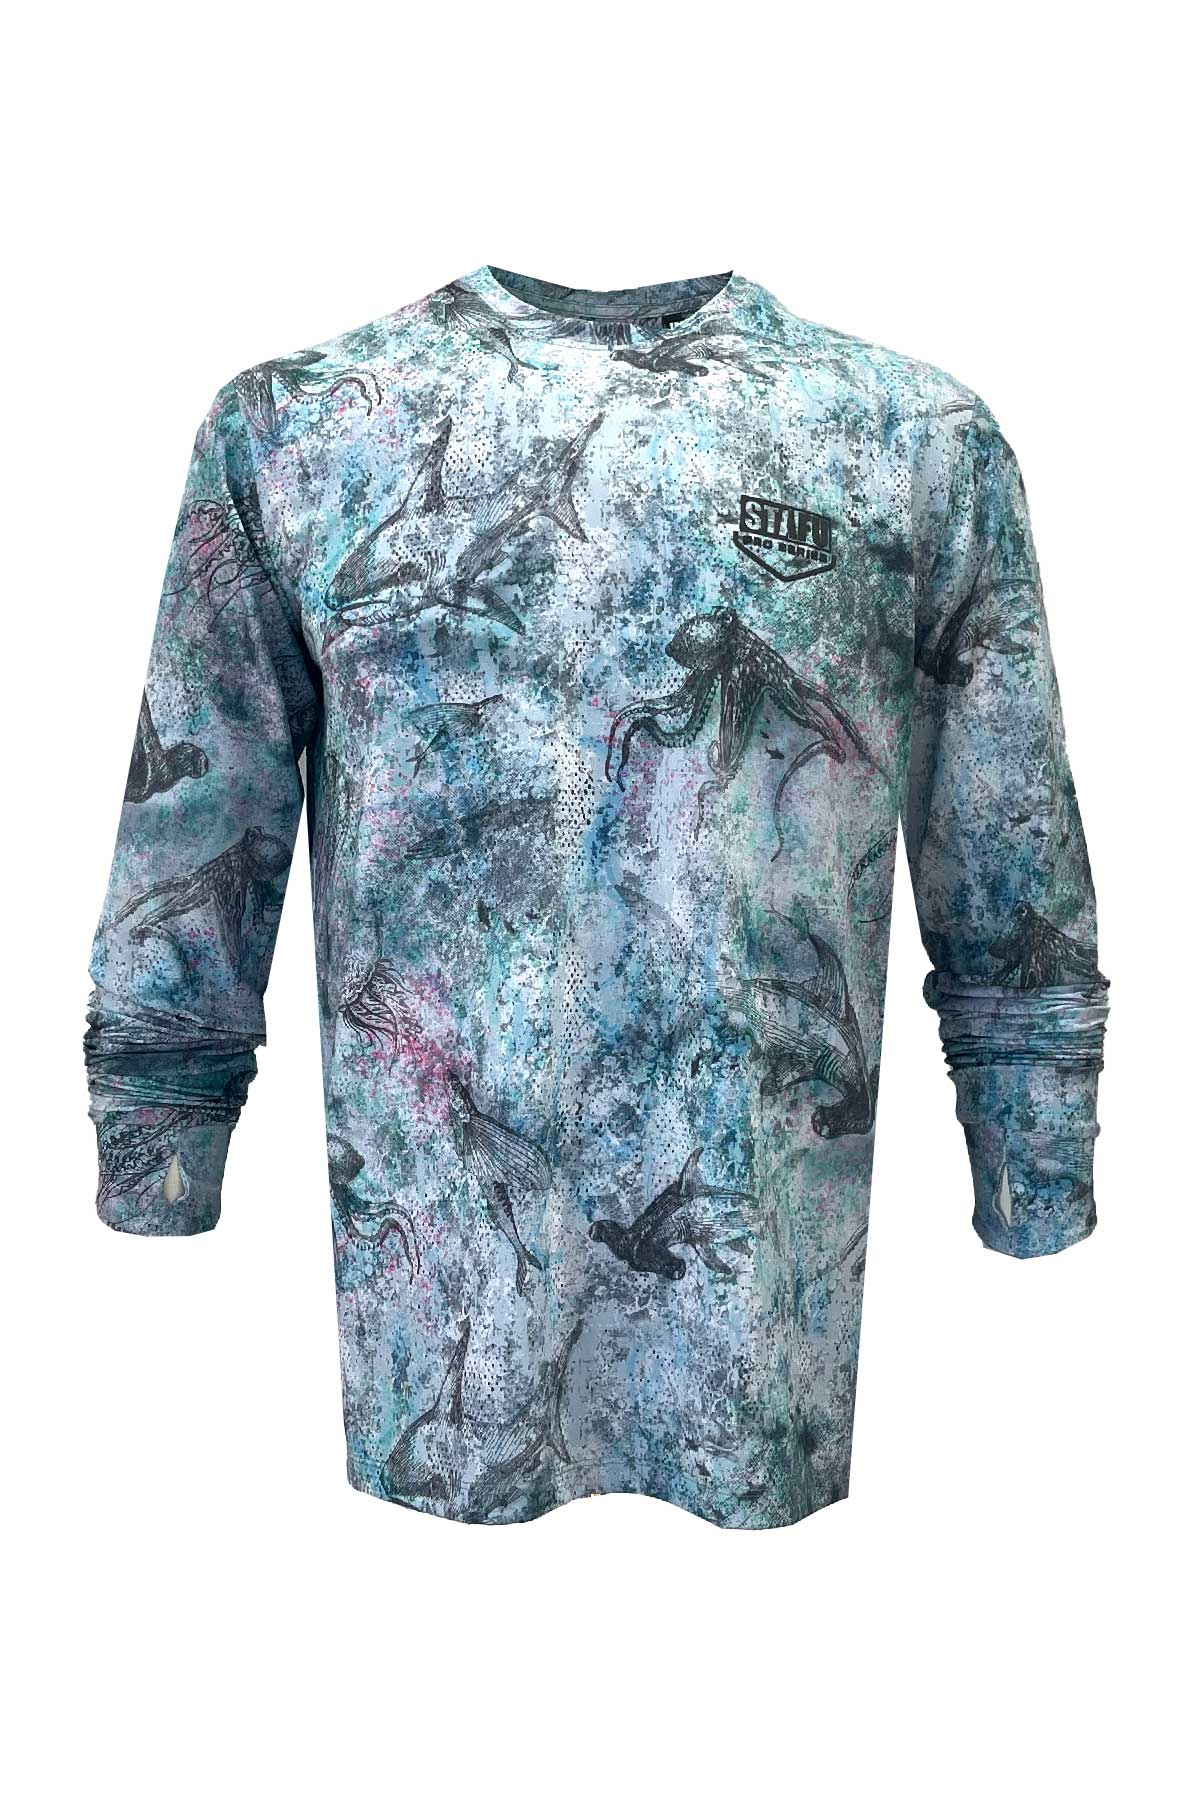 Apex v2 Long Sleeve Fishing Shirt - Hammerhead - Blue